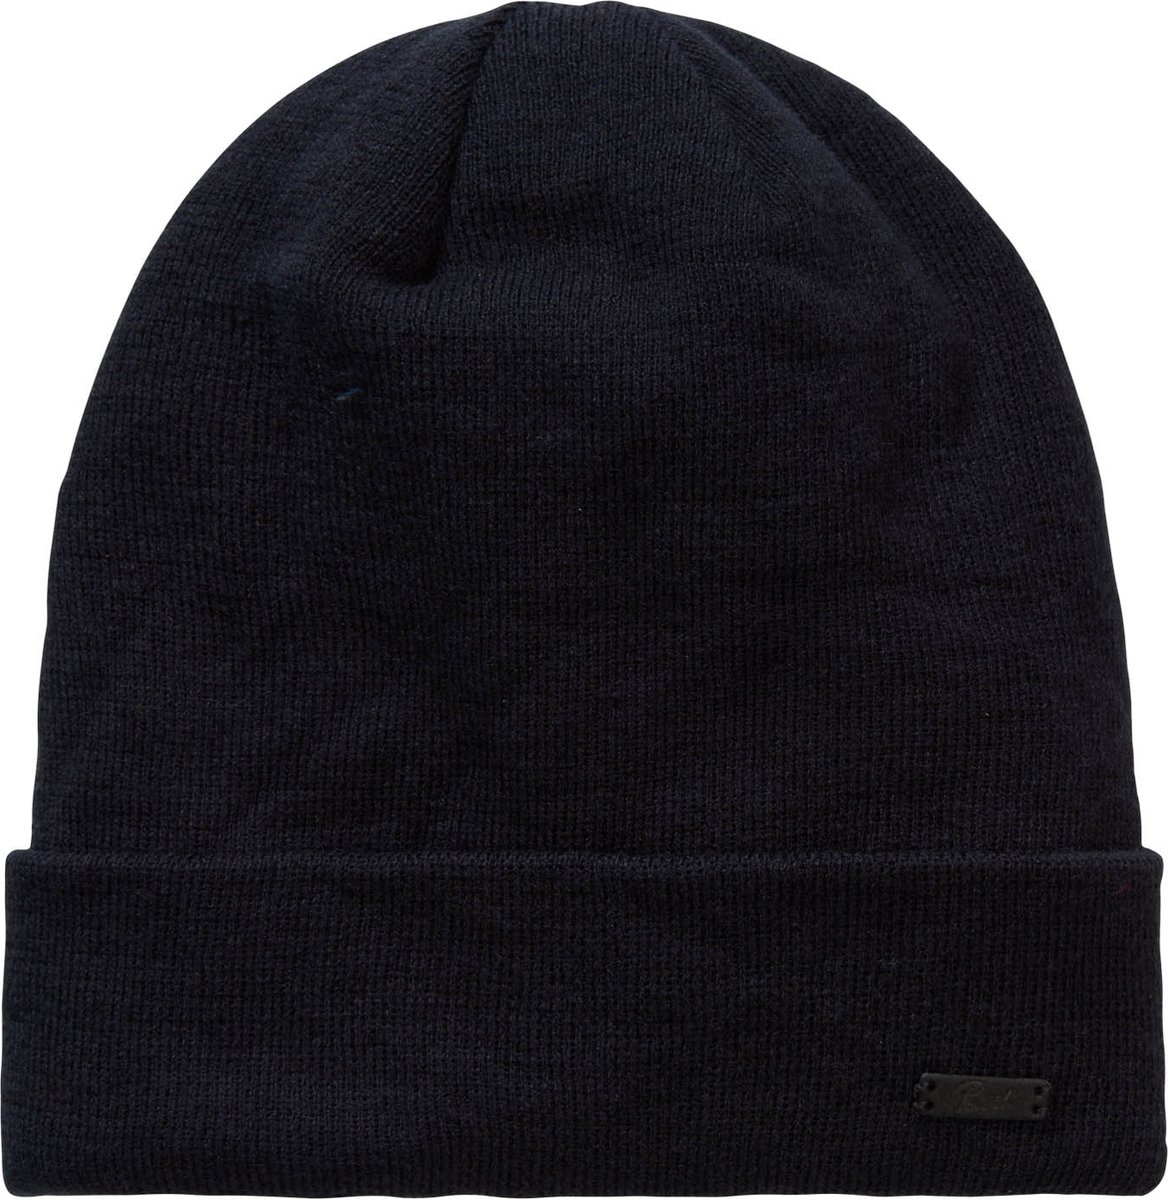 Bonnet - bonnet d'hiver - bonnet homme et femme - RPET - durable